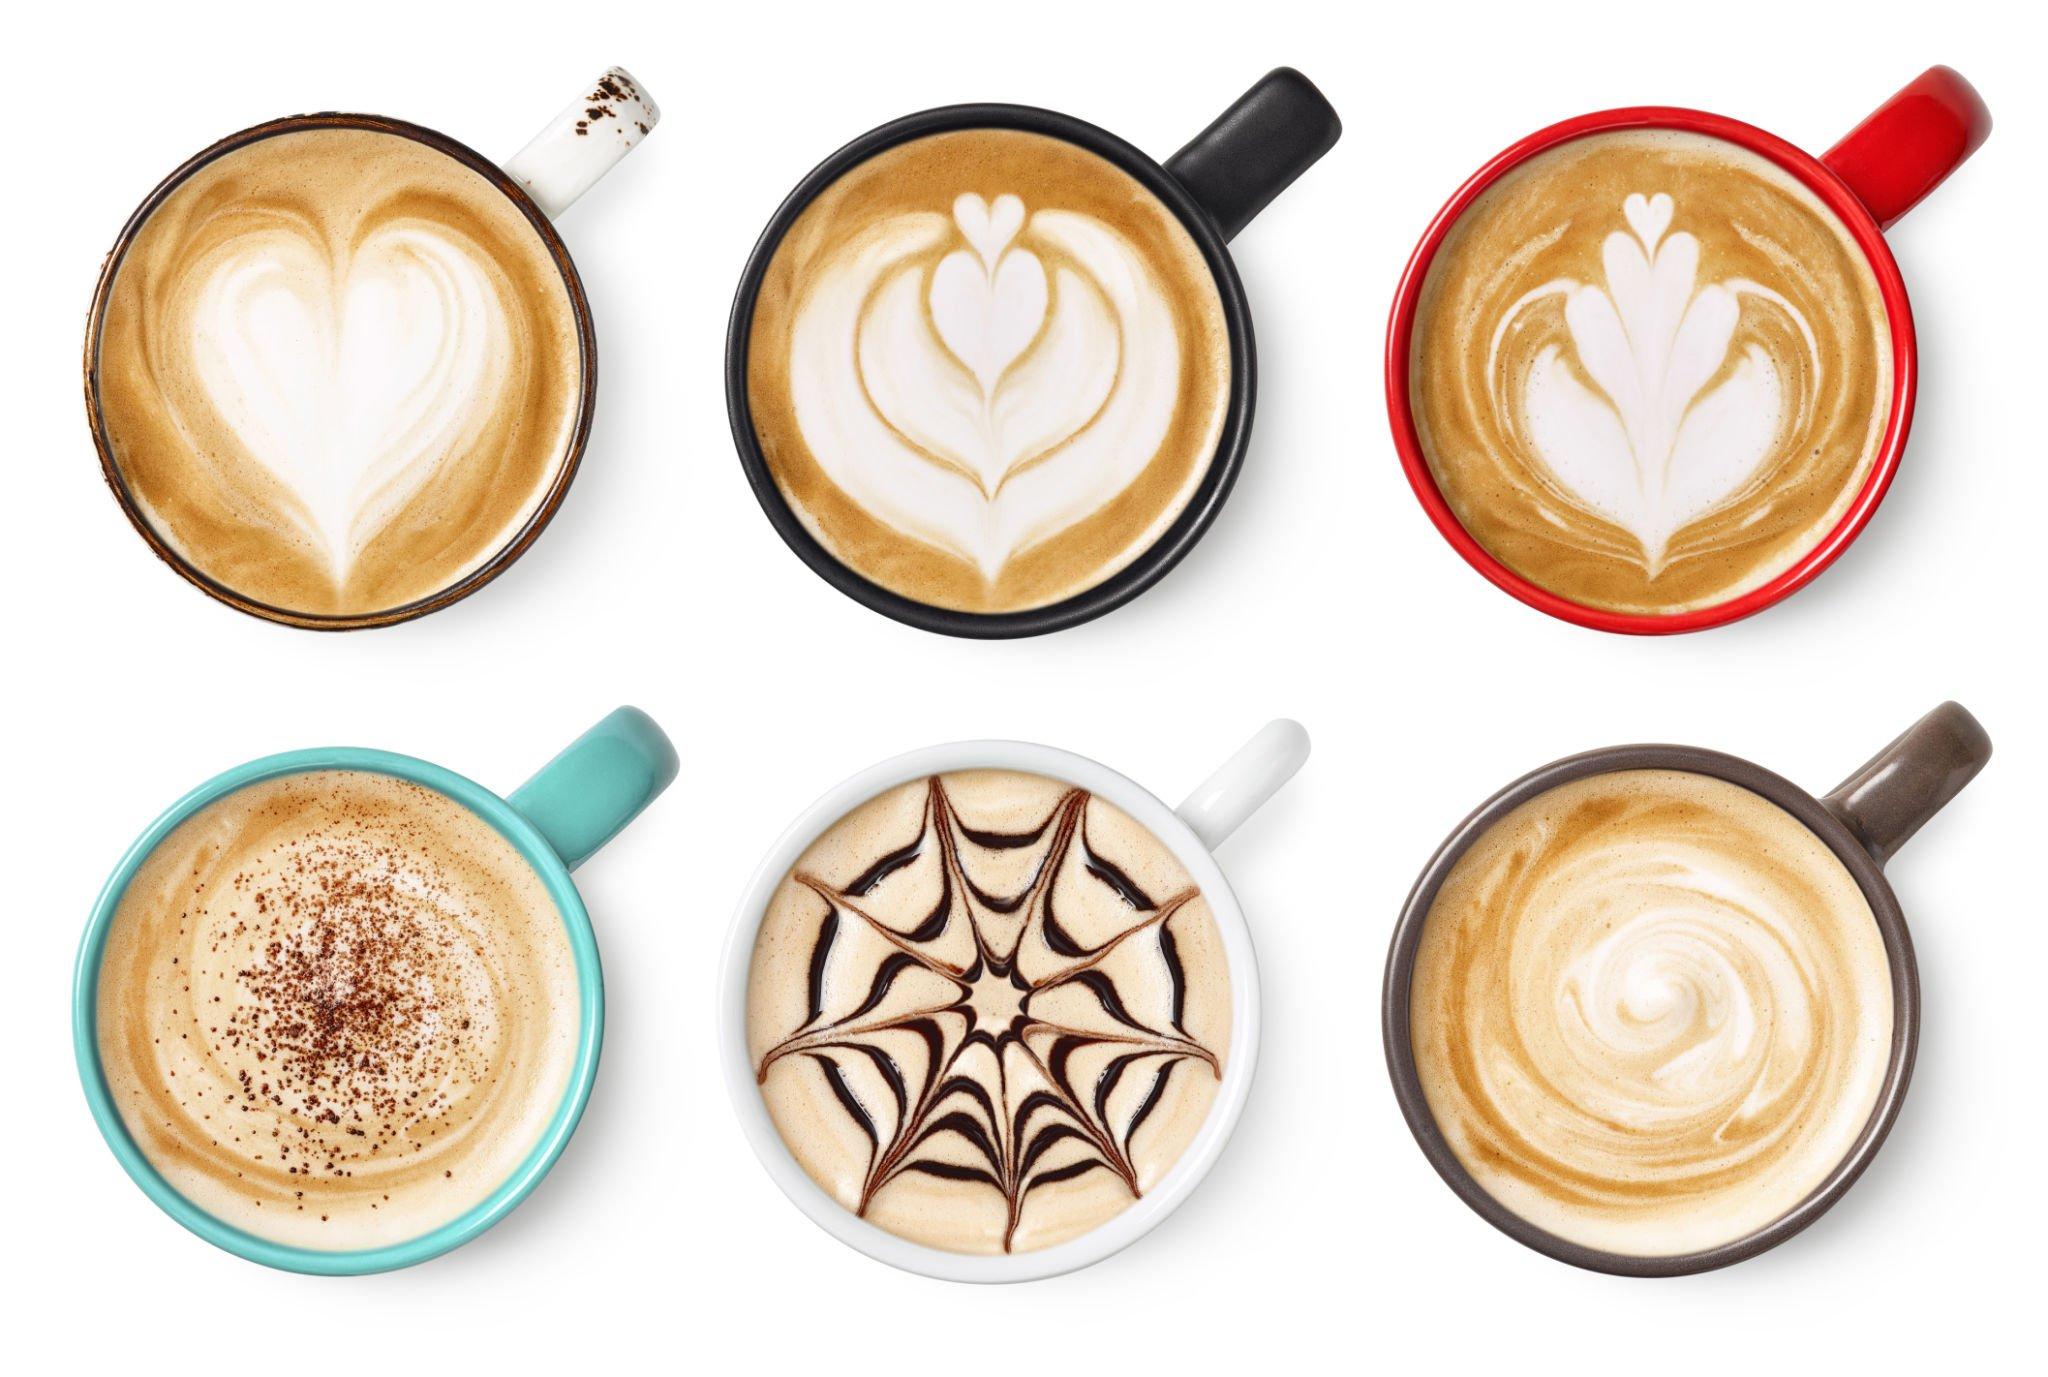 Compare Cappuccino vs Latte: Which Has More Caffeine?